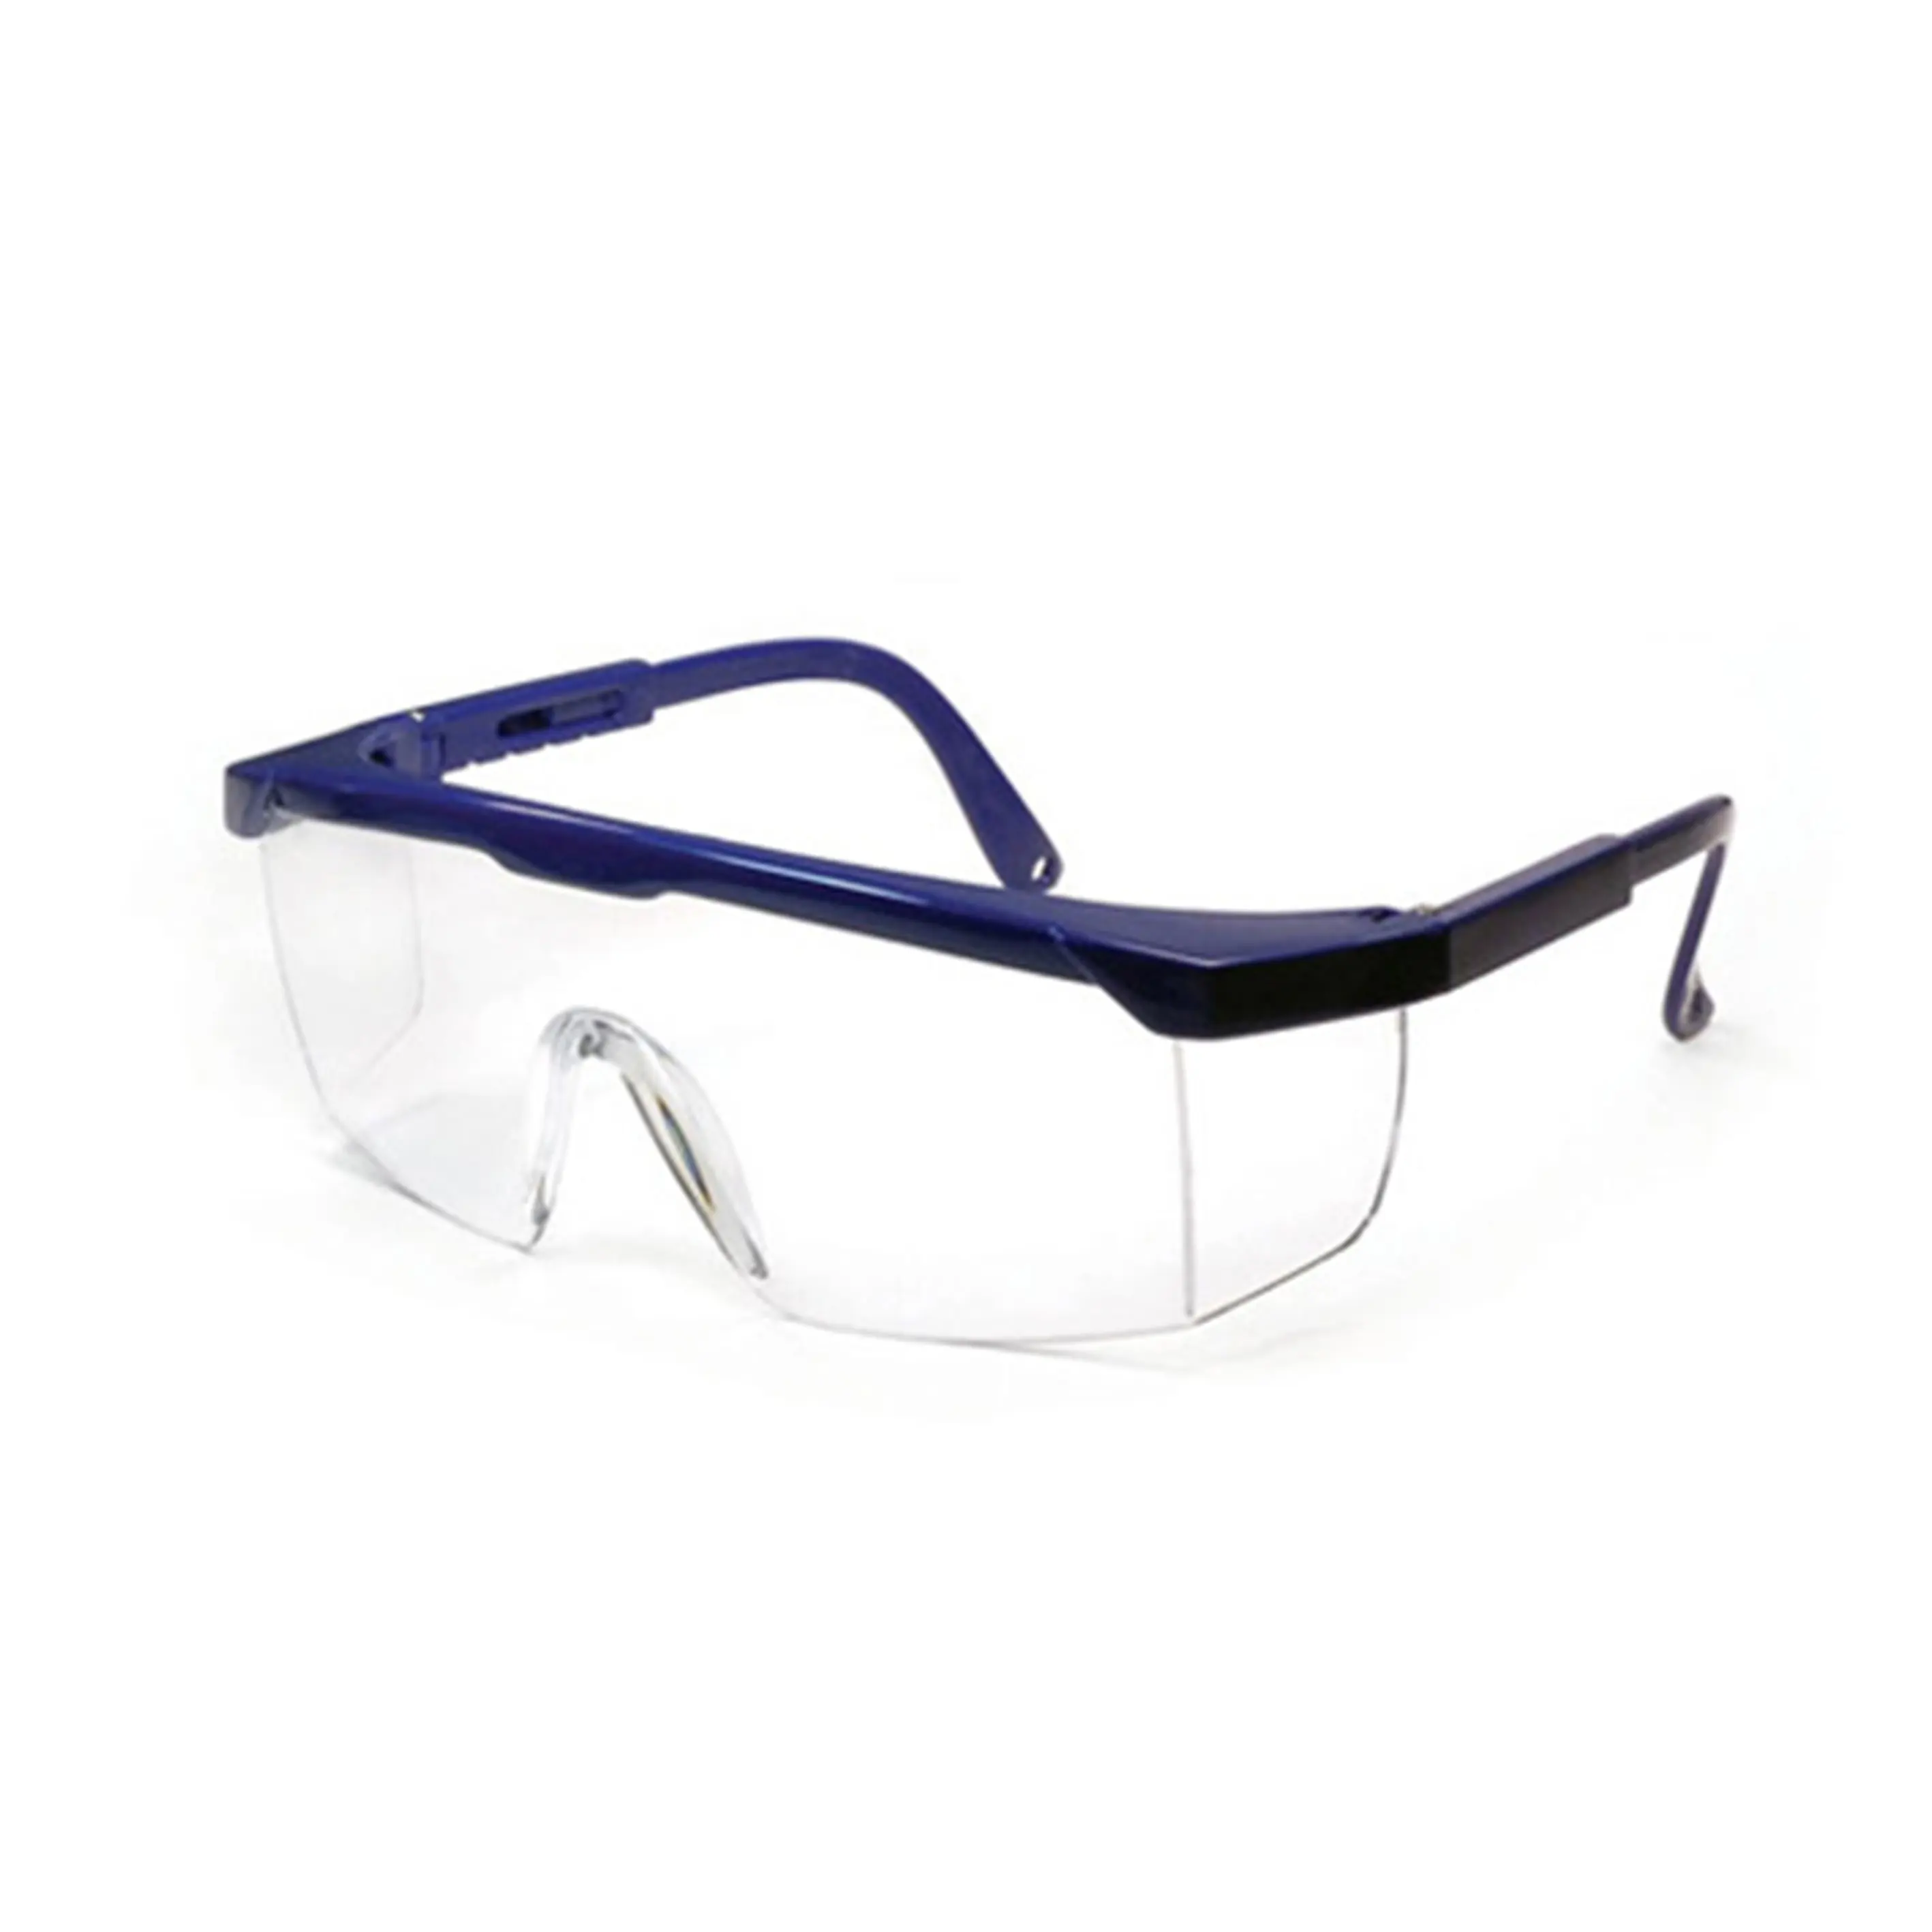 Gafas DE SEGURIDAD SG1001, gafas de trabajo antiimpacto, protección lateral, gafas de seguridad, gafas de soldadura CE